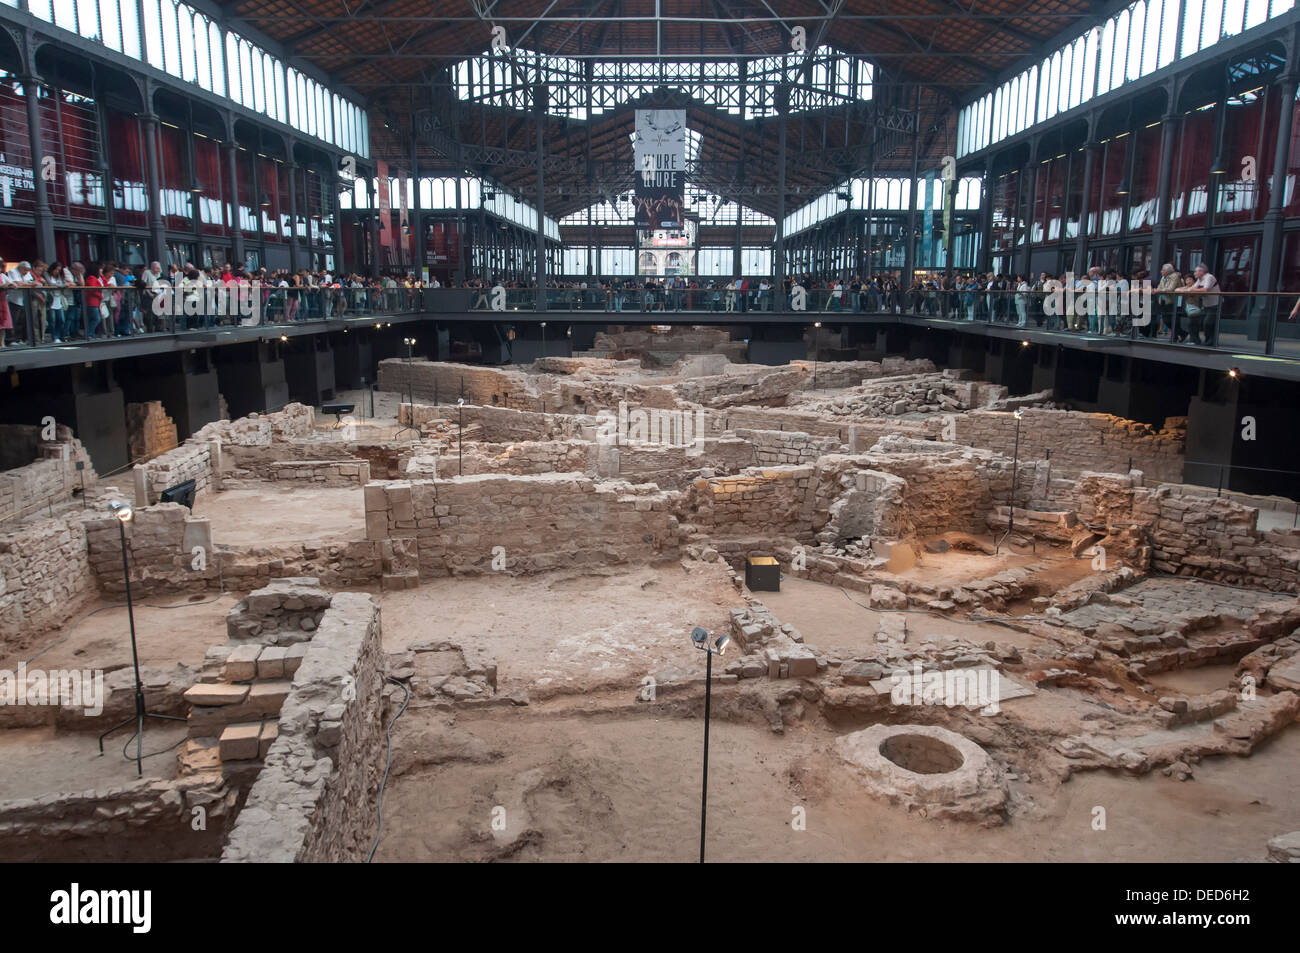 Mercat del Born Yacimiento arqueologico, Barcelona, Cataluña, España Stock Photo